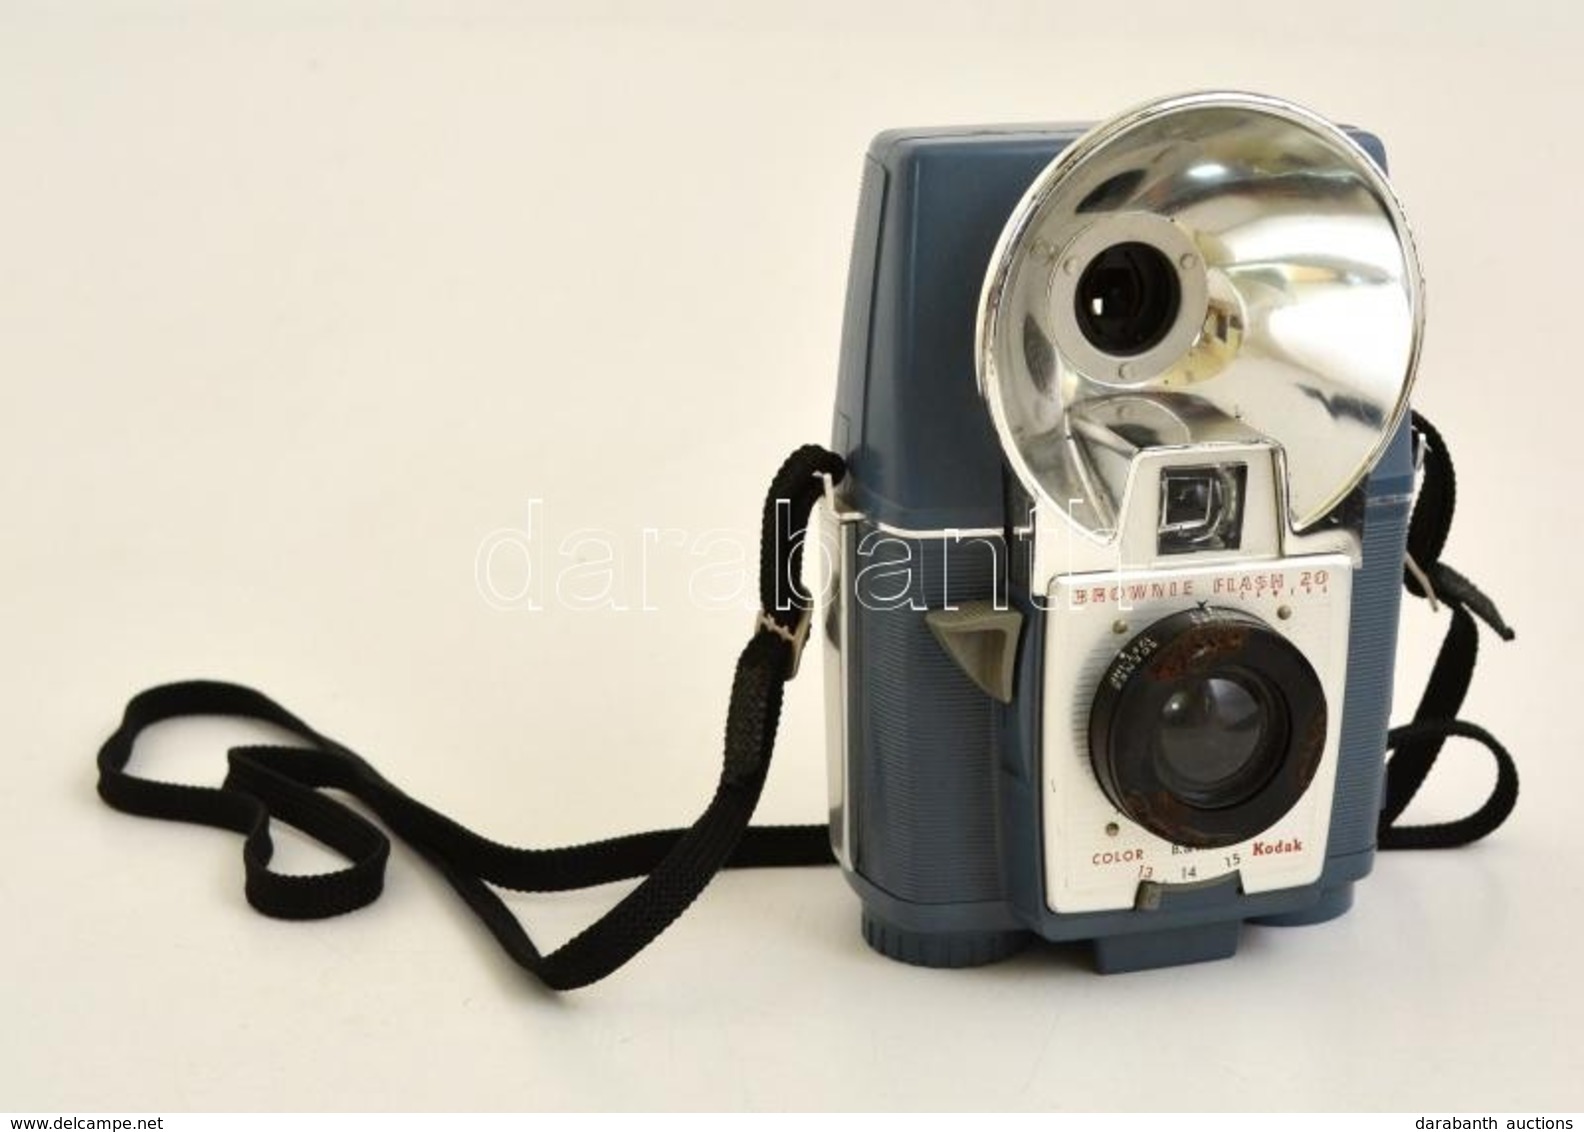 Kodak Brownie Flash 20 Box Fényképezőgép, Működőképes állapotban / Vintage Kodak Box Camera, In Working Condition - Fotoapparate